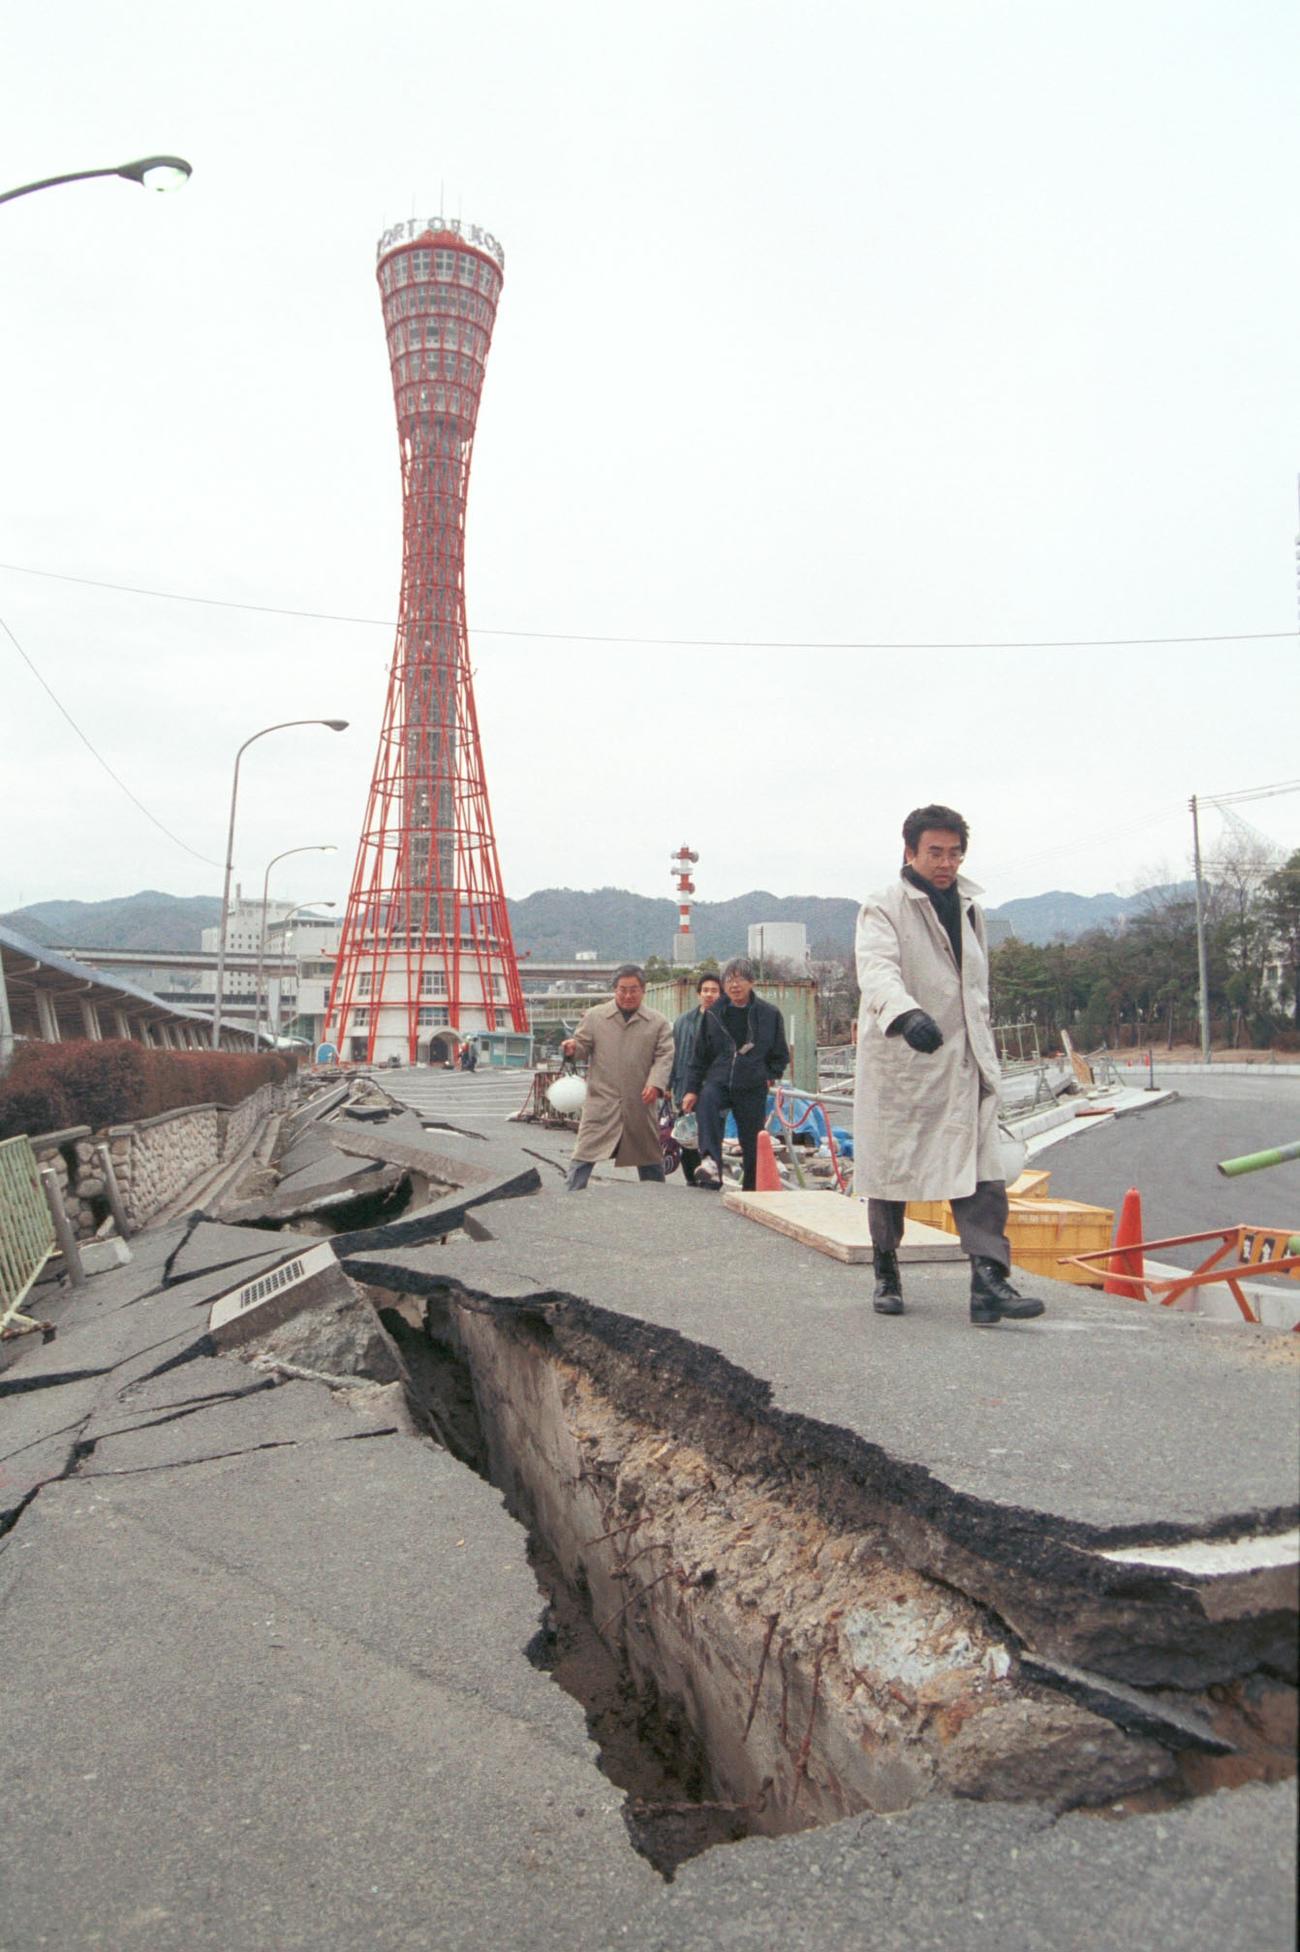 95年阪神淡路大震災で美しい港町、神戸は大きな被害を受けた